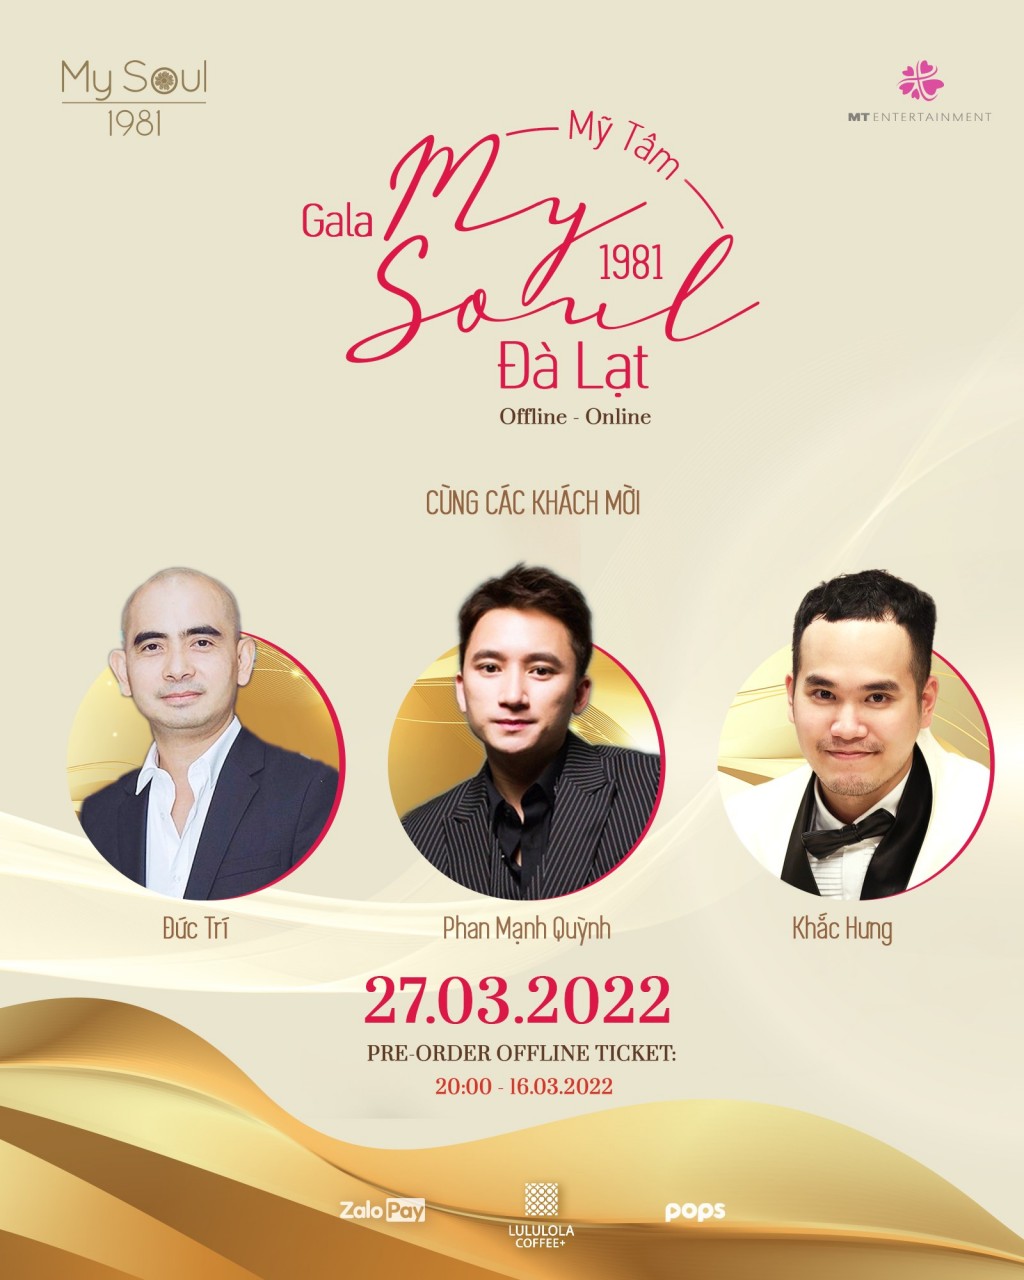 Mỹ Tâm cũng công bố 3 khách mời đặc biệt sẽ góp mặt trong show diễn ngày 27/3 đó chính là Đức Trí, Phan Mạnh Quỳnh và Khắc Hưng.